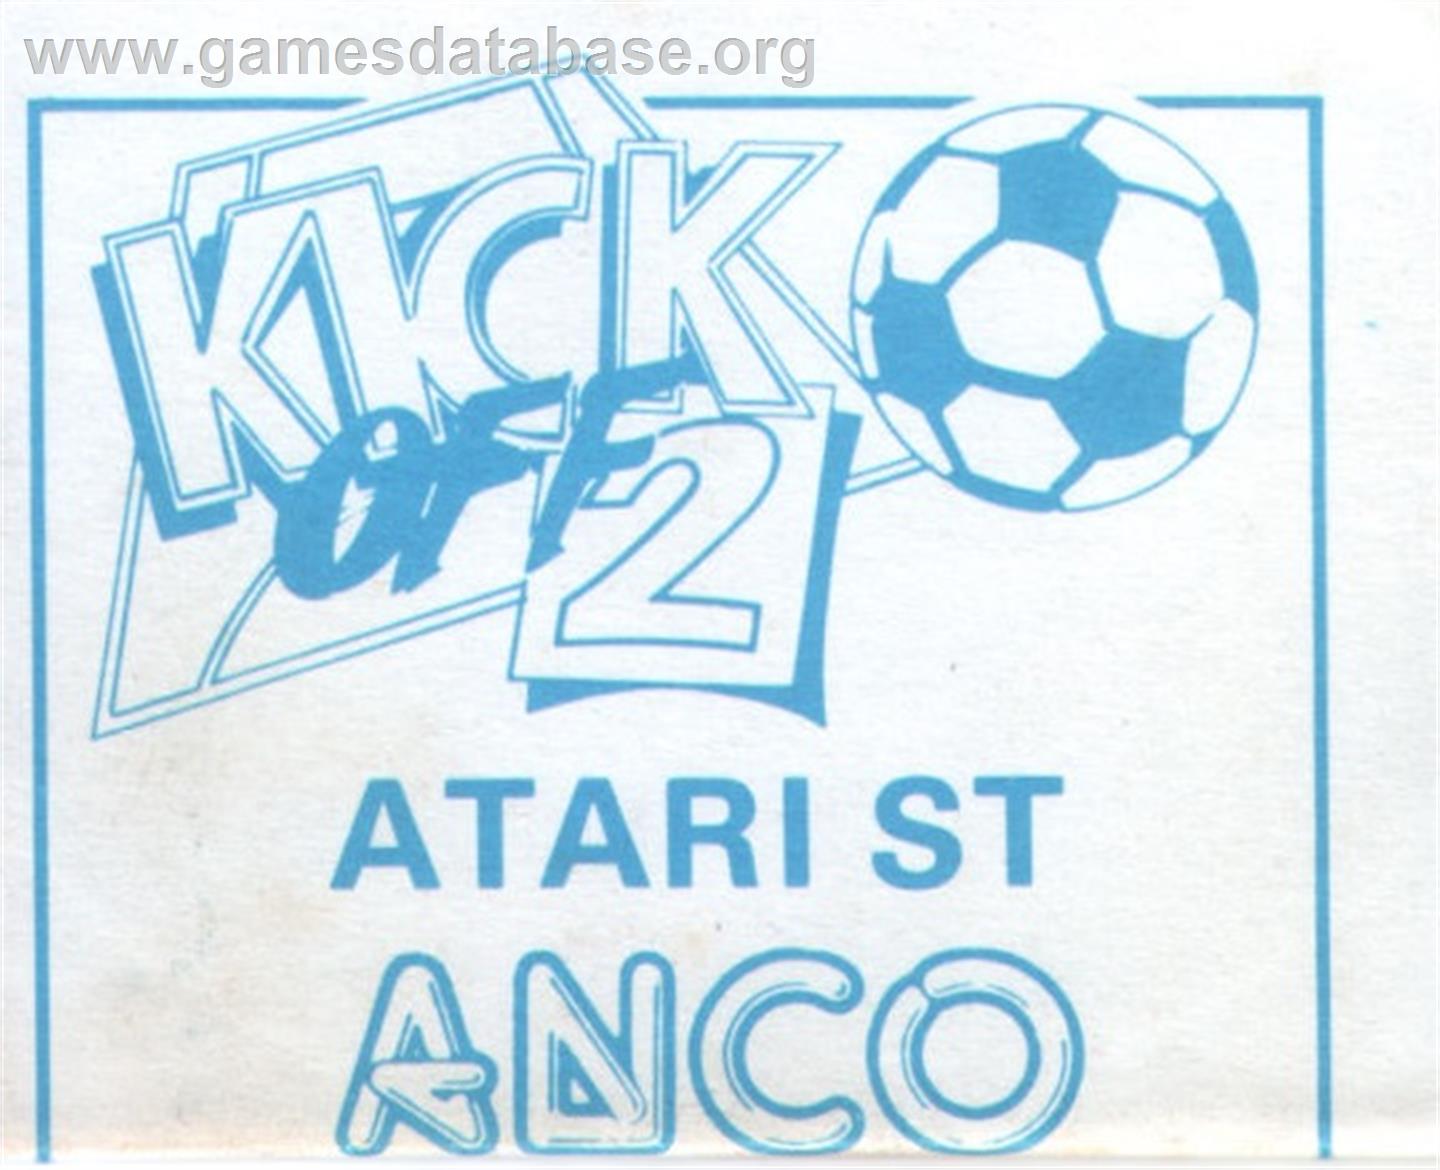 Kick Off 2 - Atari ST - Artwork - Cartridge Top